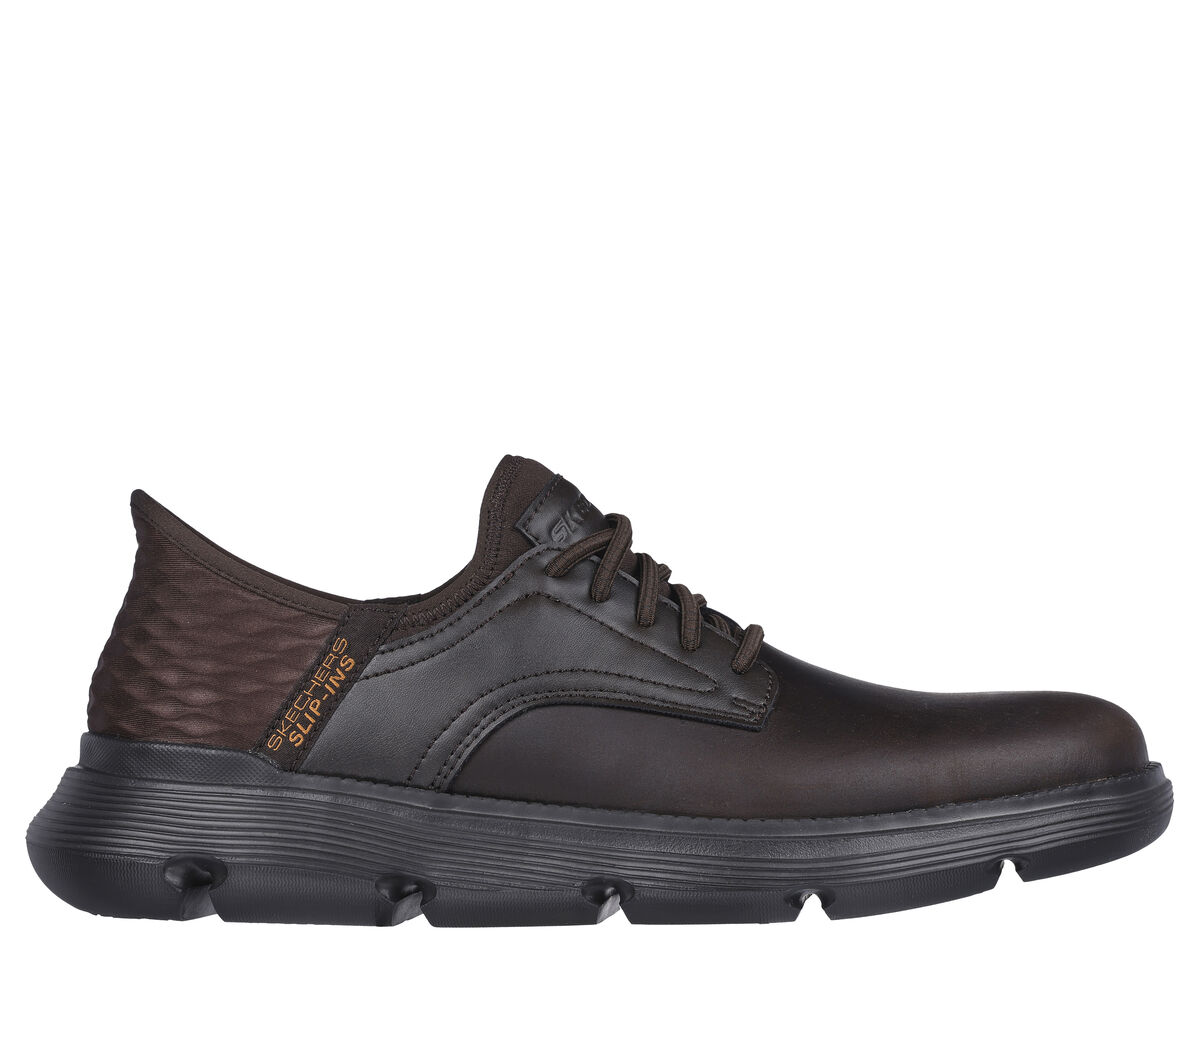 Skechers Men Grey Sports Walking Shoes SKU: 158-232450-14-10